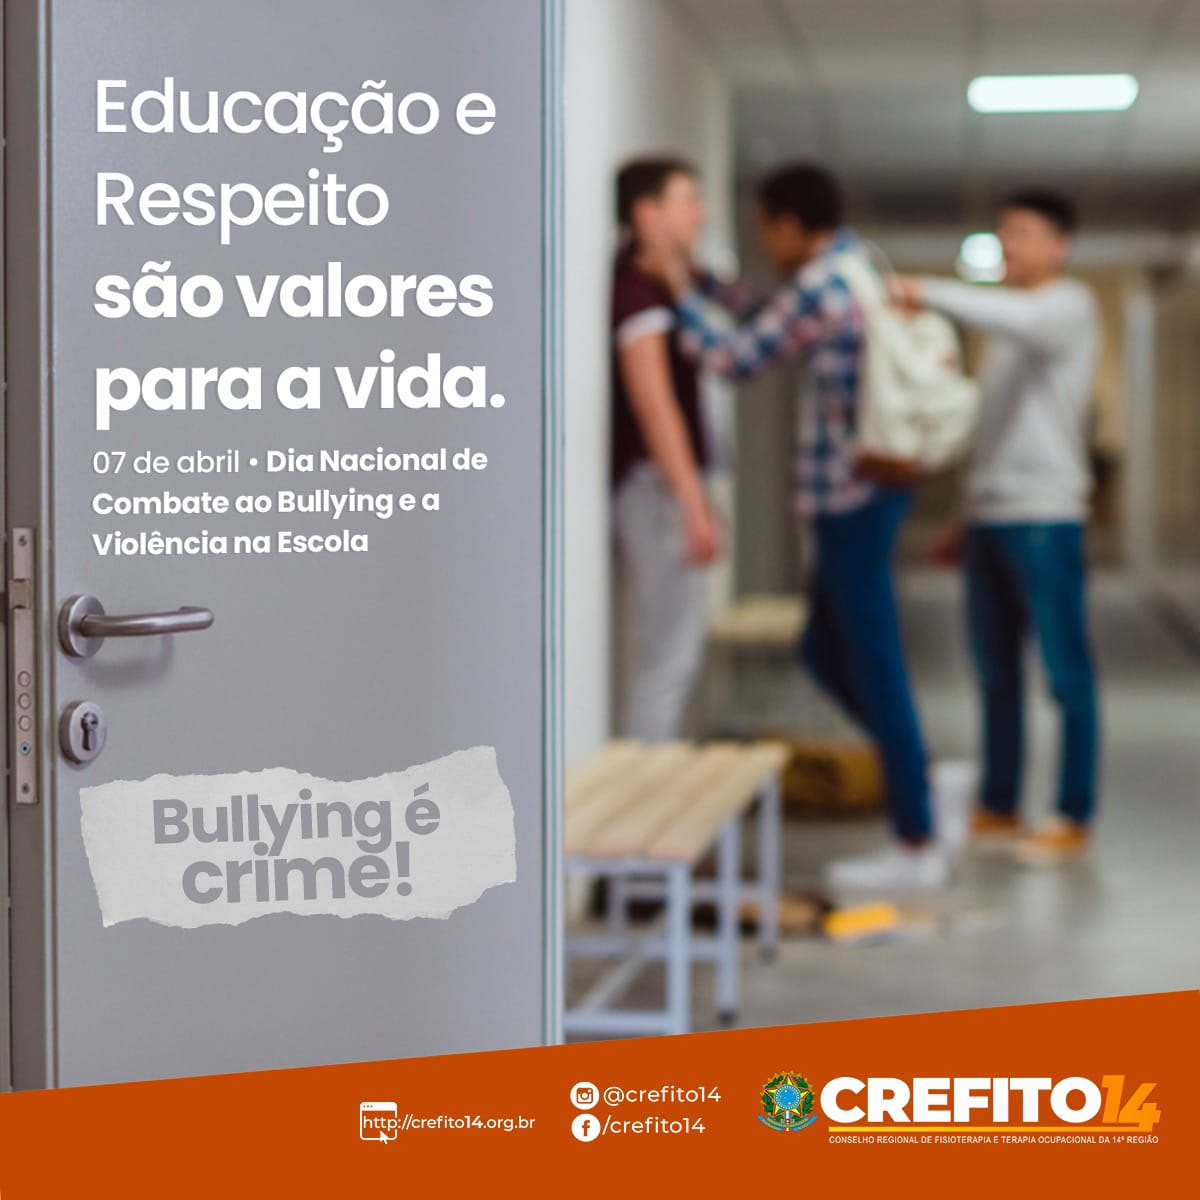 Como combater o bullying nas escolas